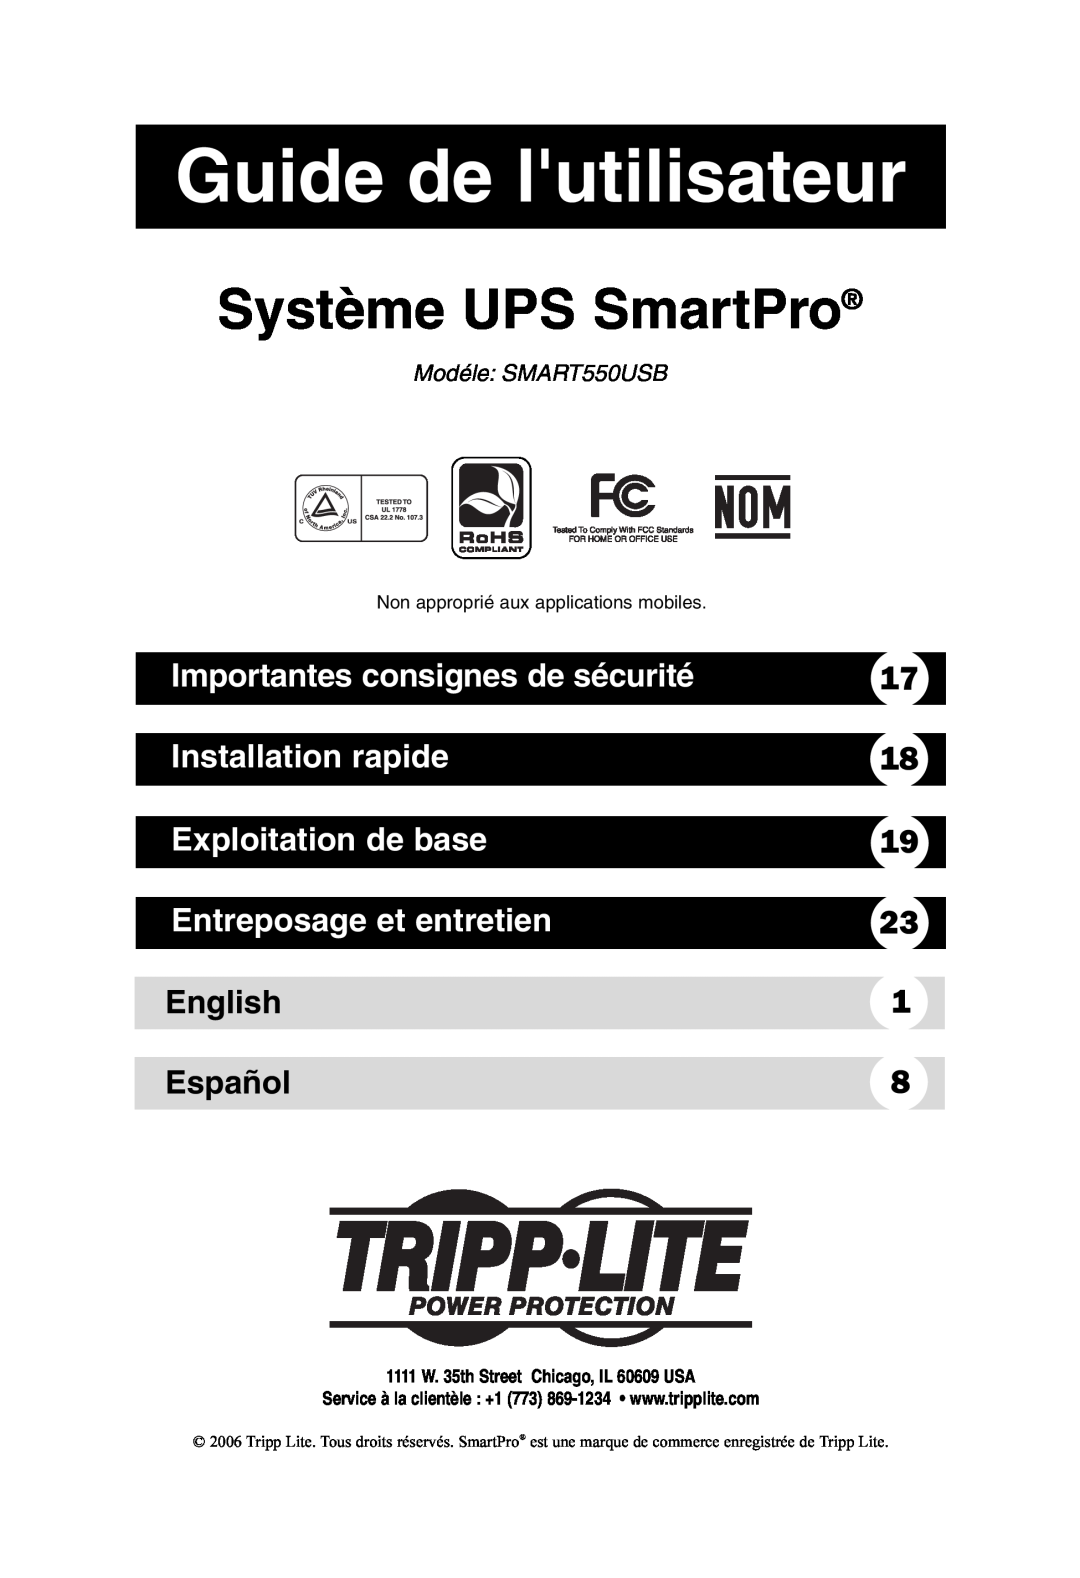 Tripp Lite SMART550USB Guide de lutilisateur, Système UPS SmartPro, Importantes consignes de sécurité, Installation rapide 